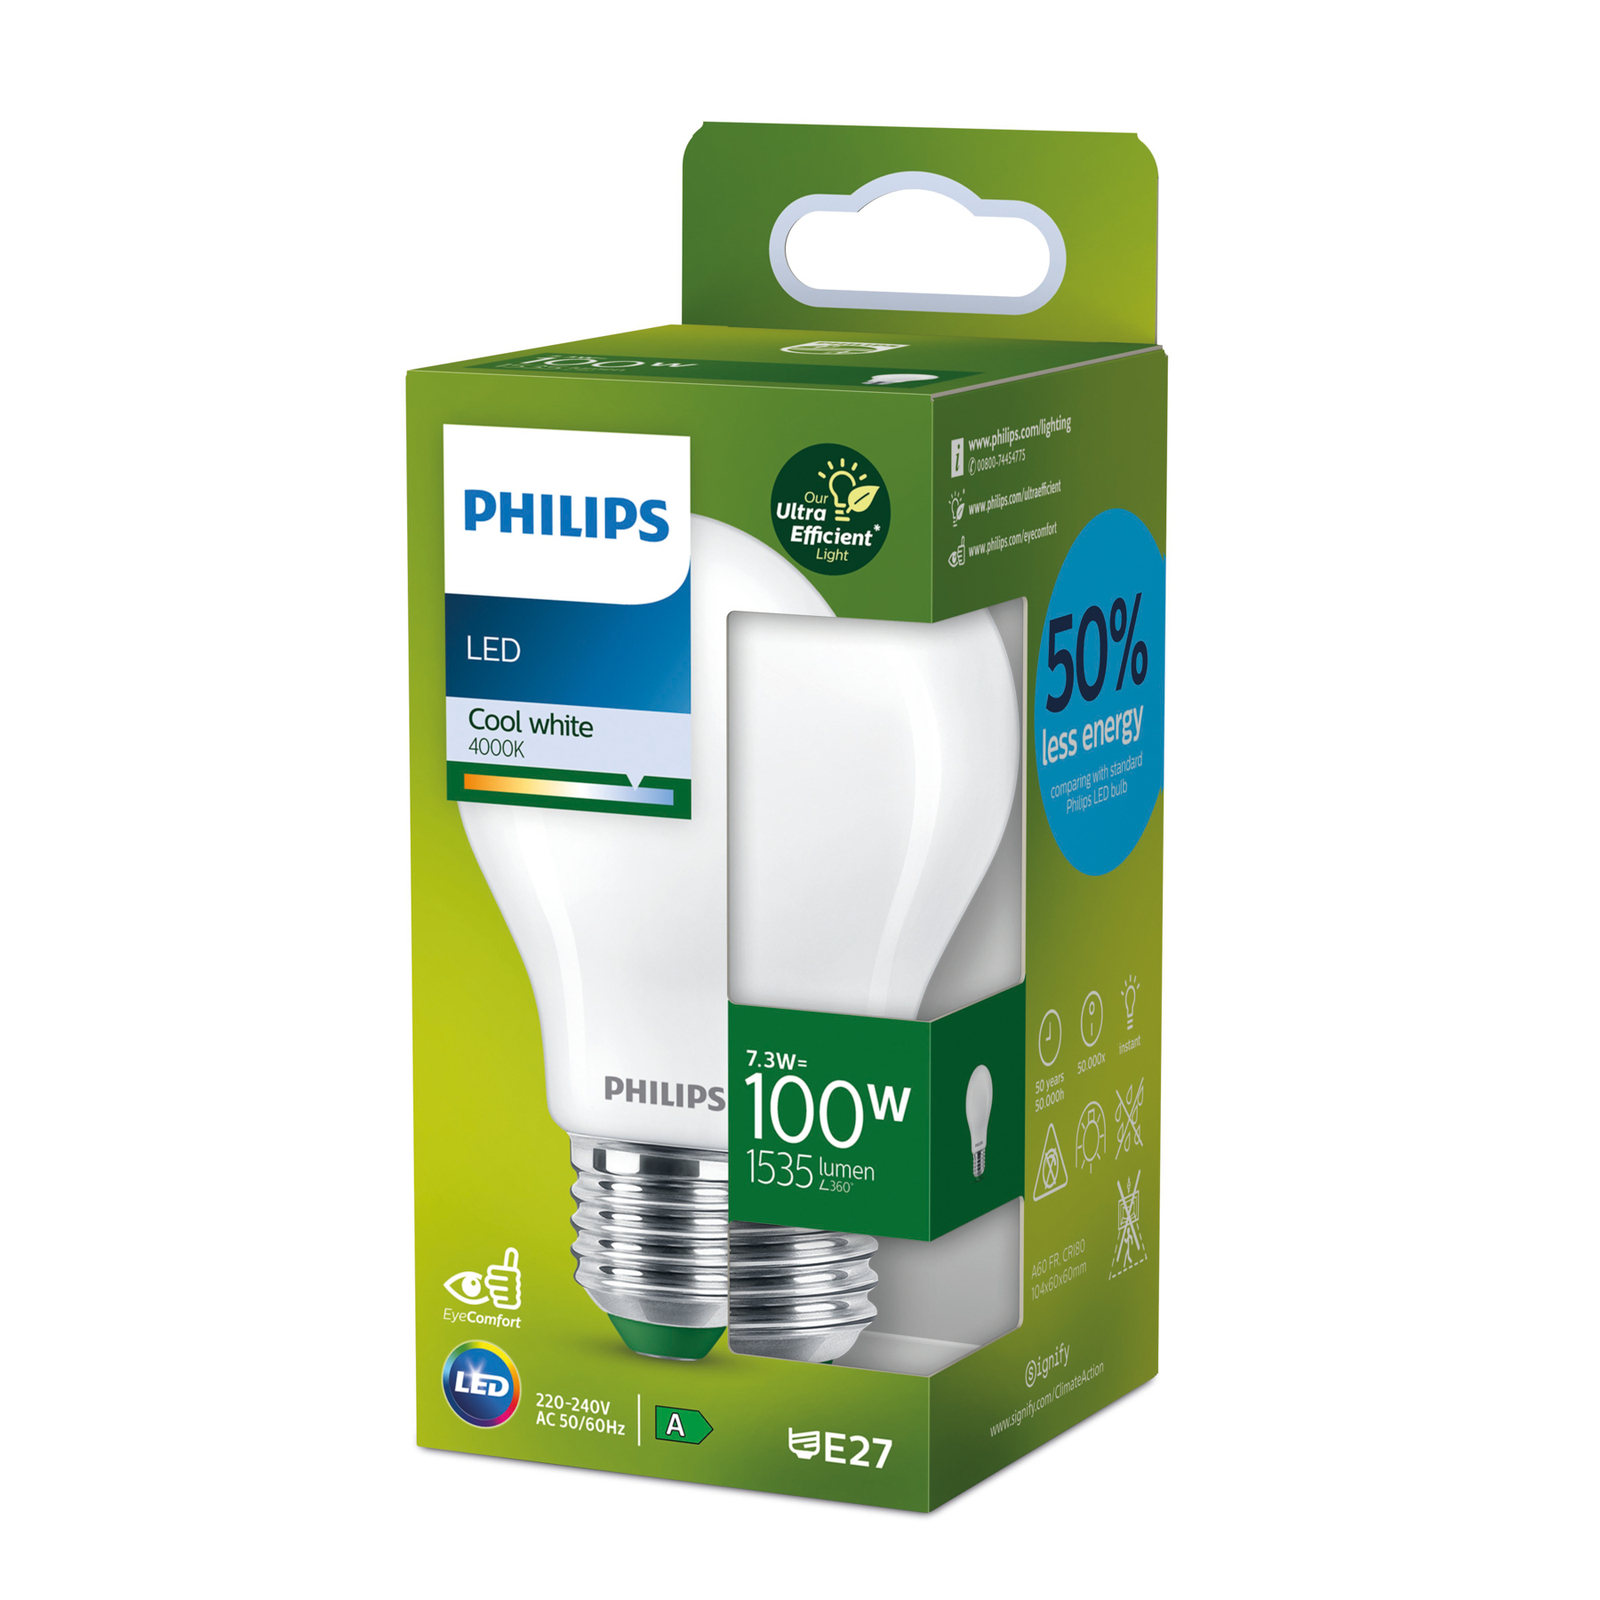 Philips E27 LED žiarovka A60 7,3W 1535lm 4000K mat